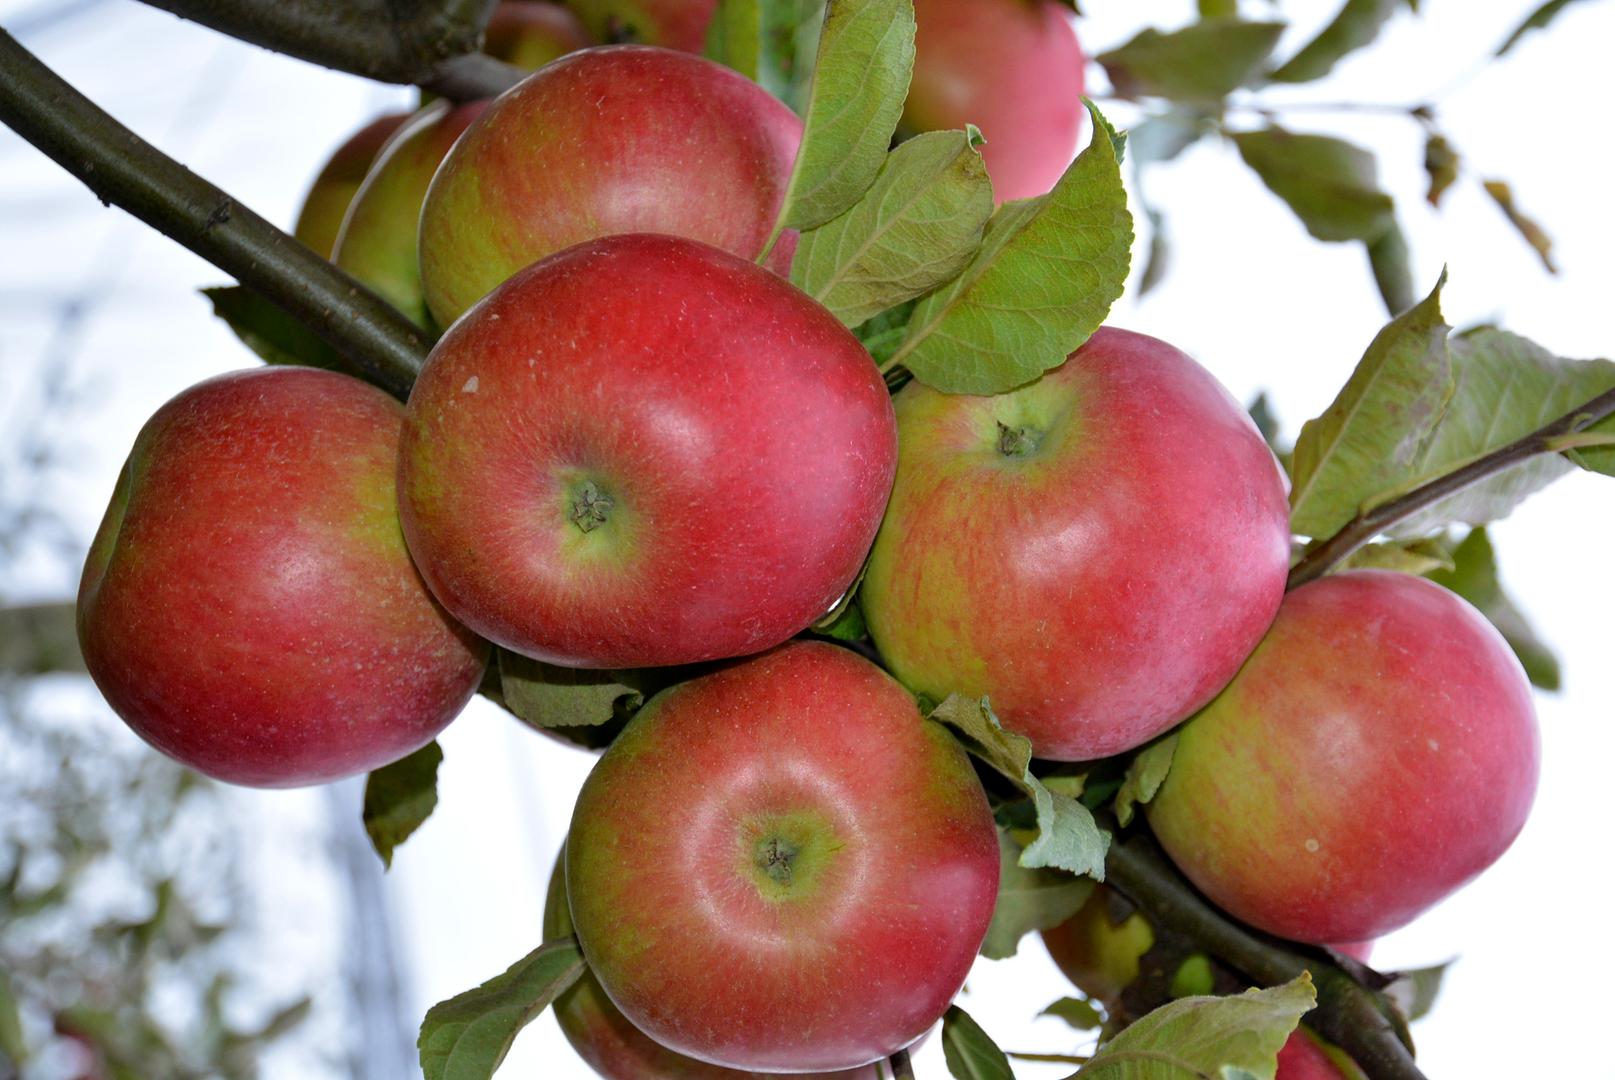 Jabuke su dobre i za zdravlje srca, povezanu su sa smanjenim rizikom od dijabetesa, učinkovito djeluju na zdravlje kostiju te štite mozak od starenja.